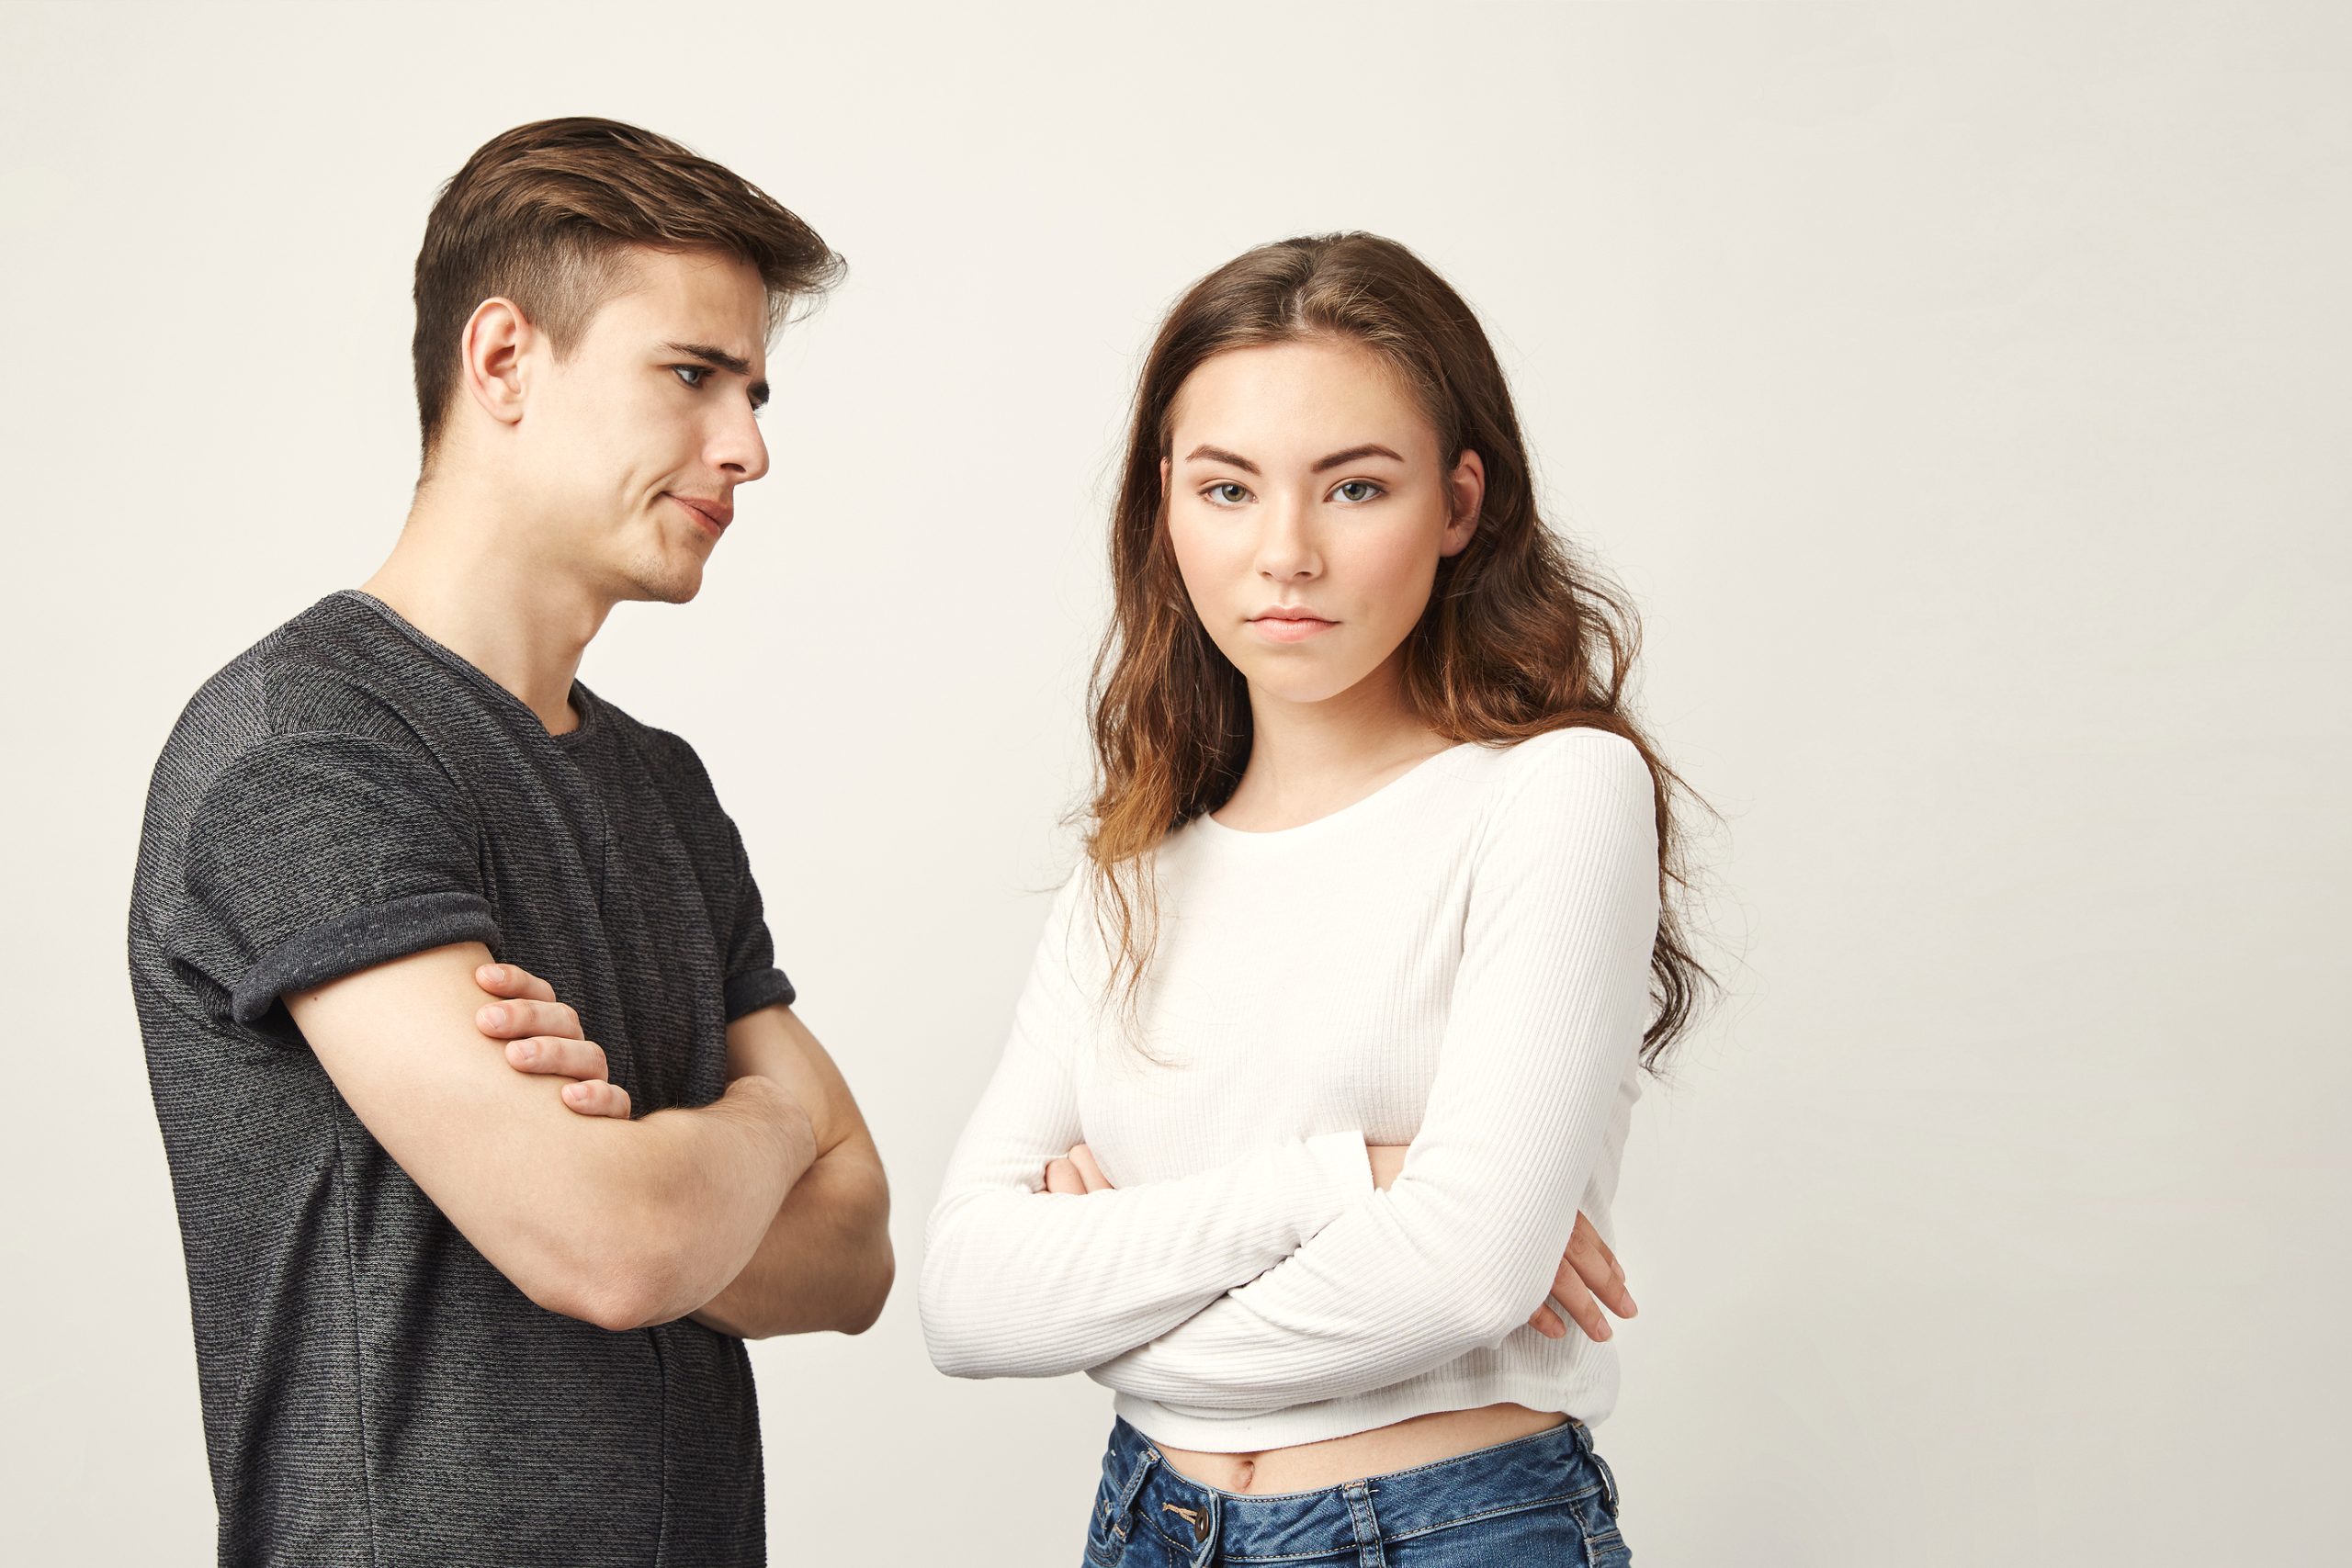 Los jóvenes normalizan las relaciones violentas entre ellos